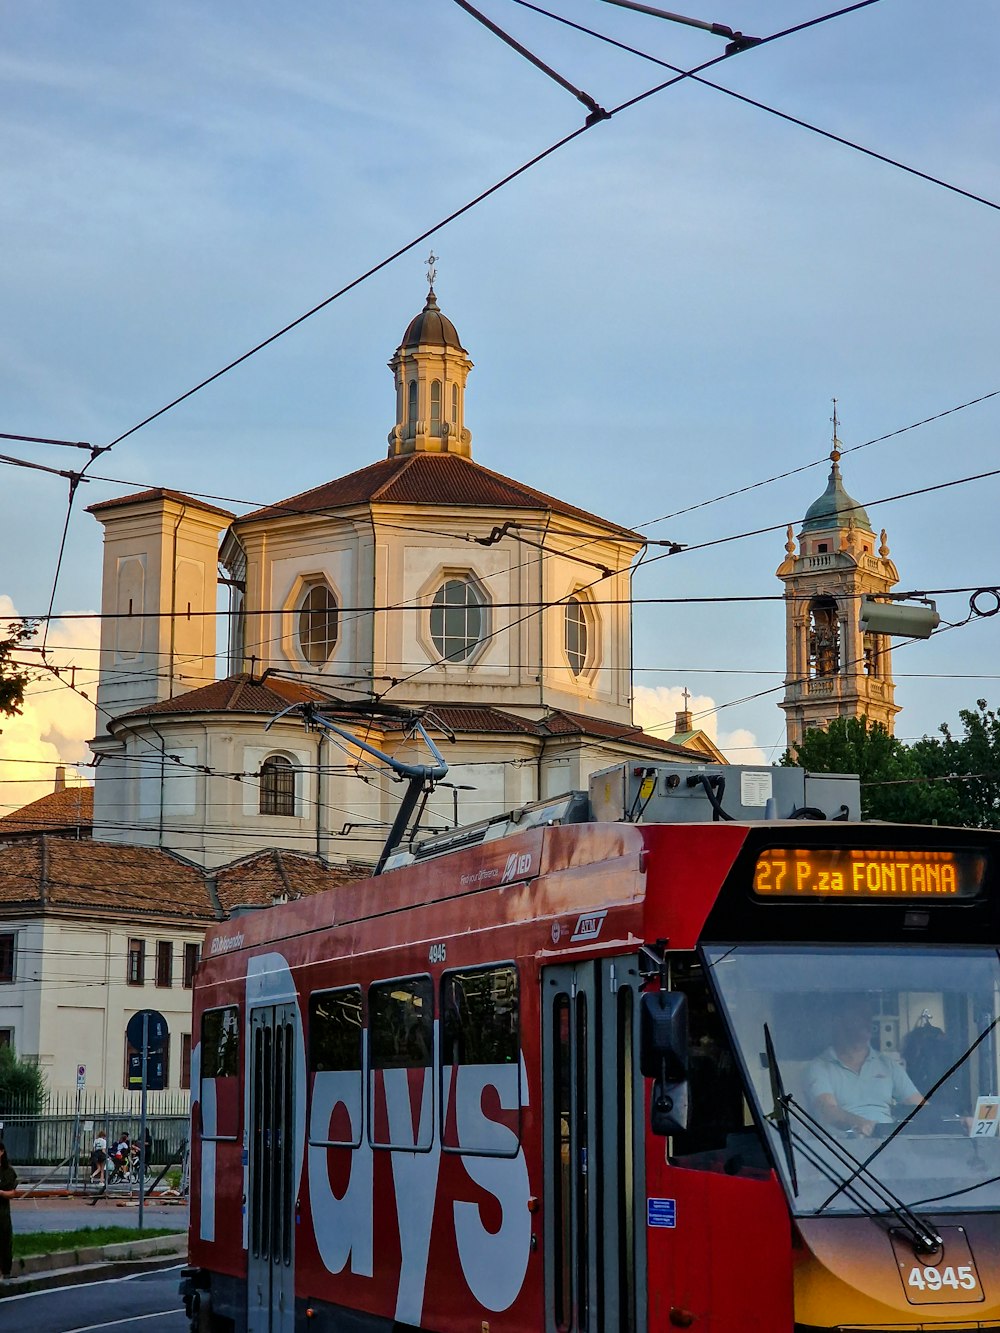 Un autobús rojo conduciendo por una calle al lado de una iglesia